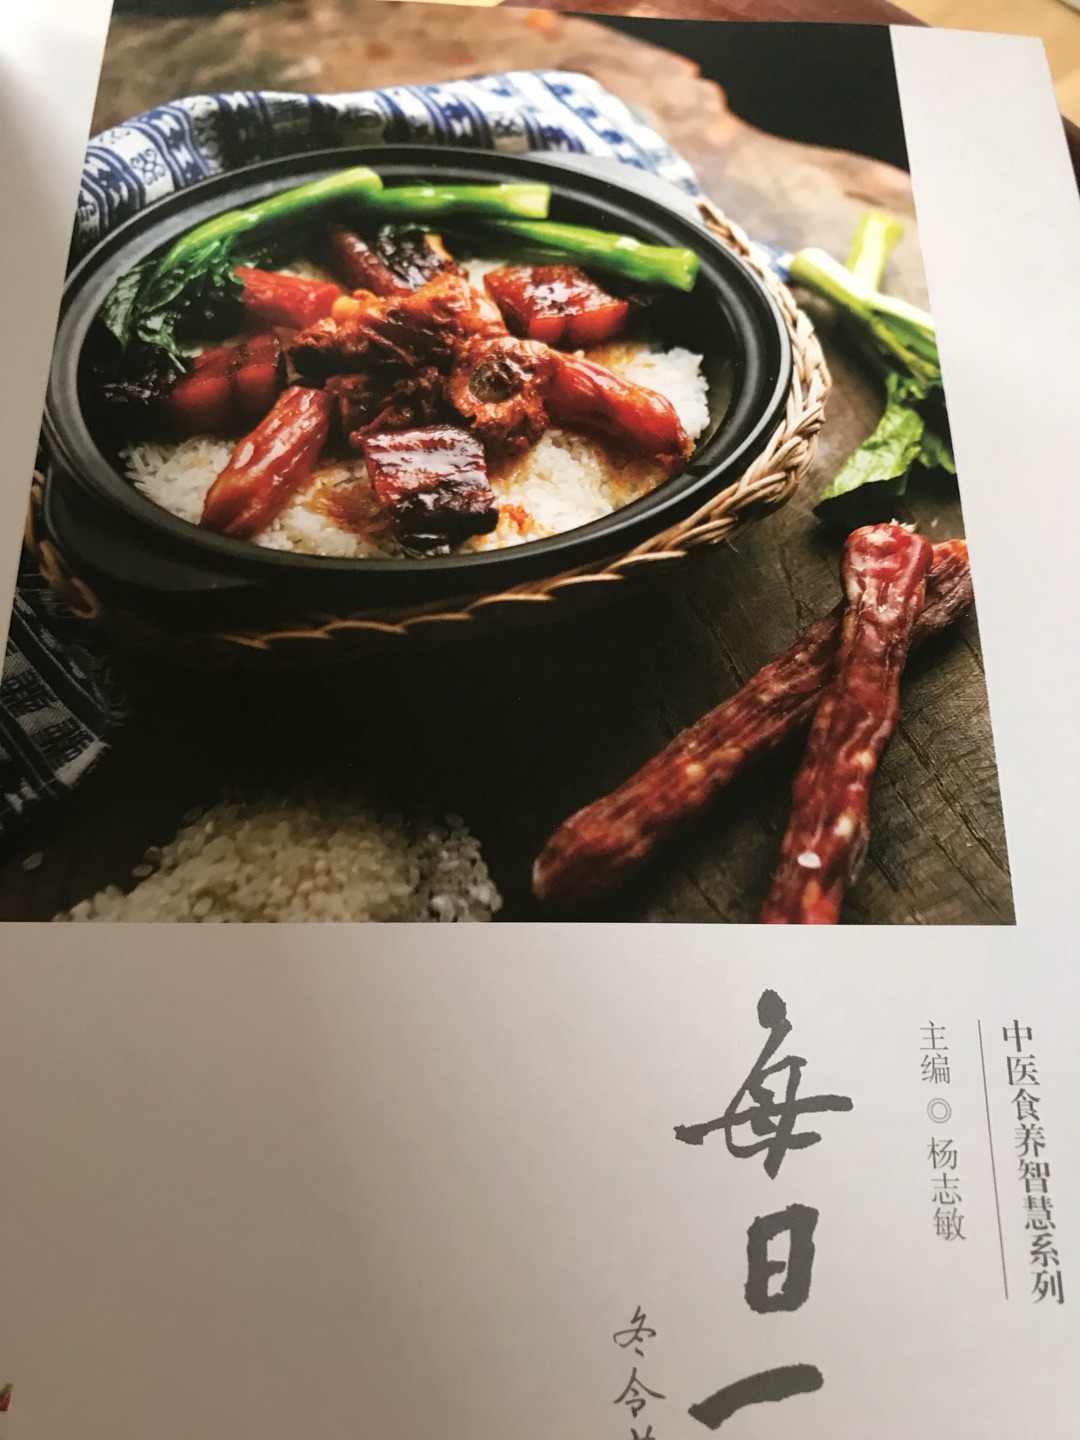 书的质量很不错，内容也非常好，这种做菜饮食适合广东人，主编出身广东中药世家，省中医的保健专家